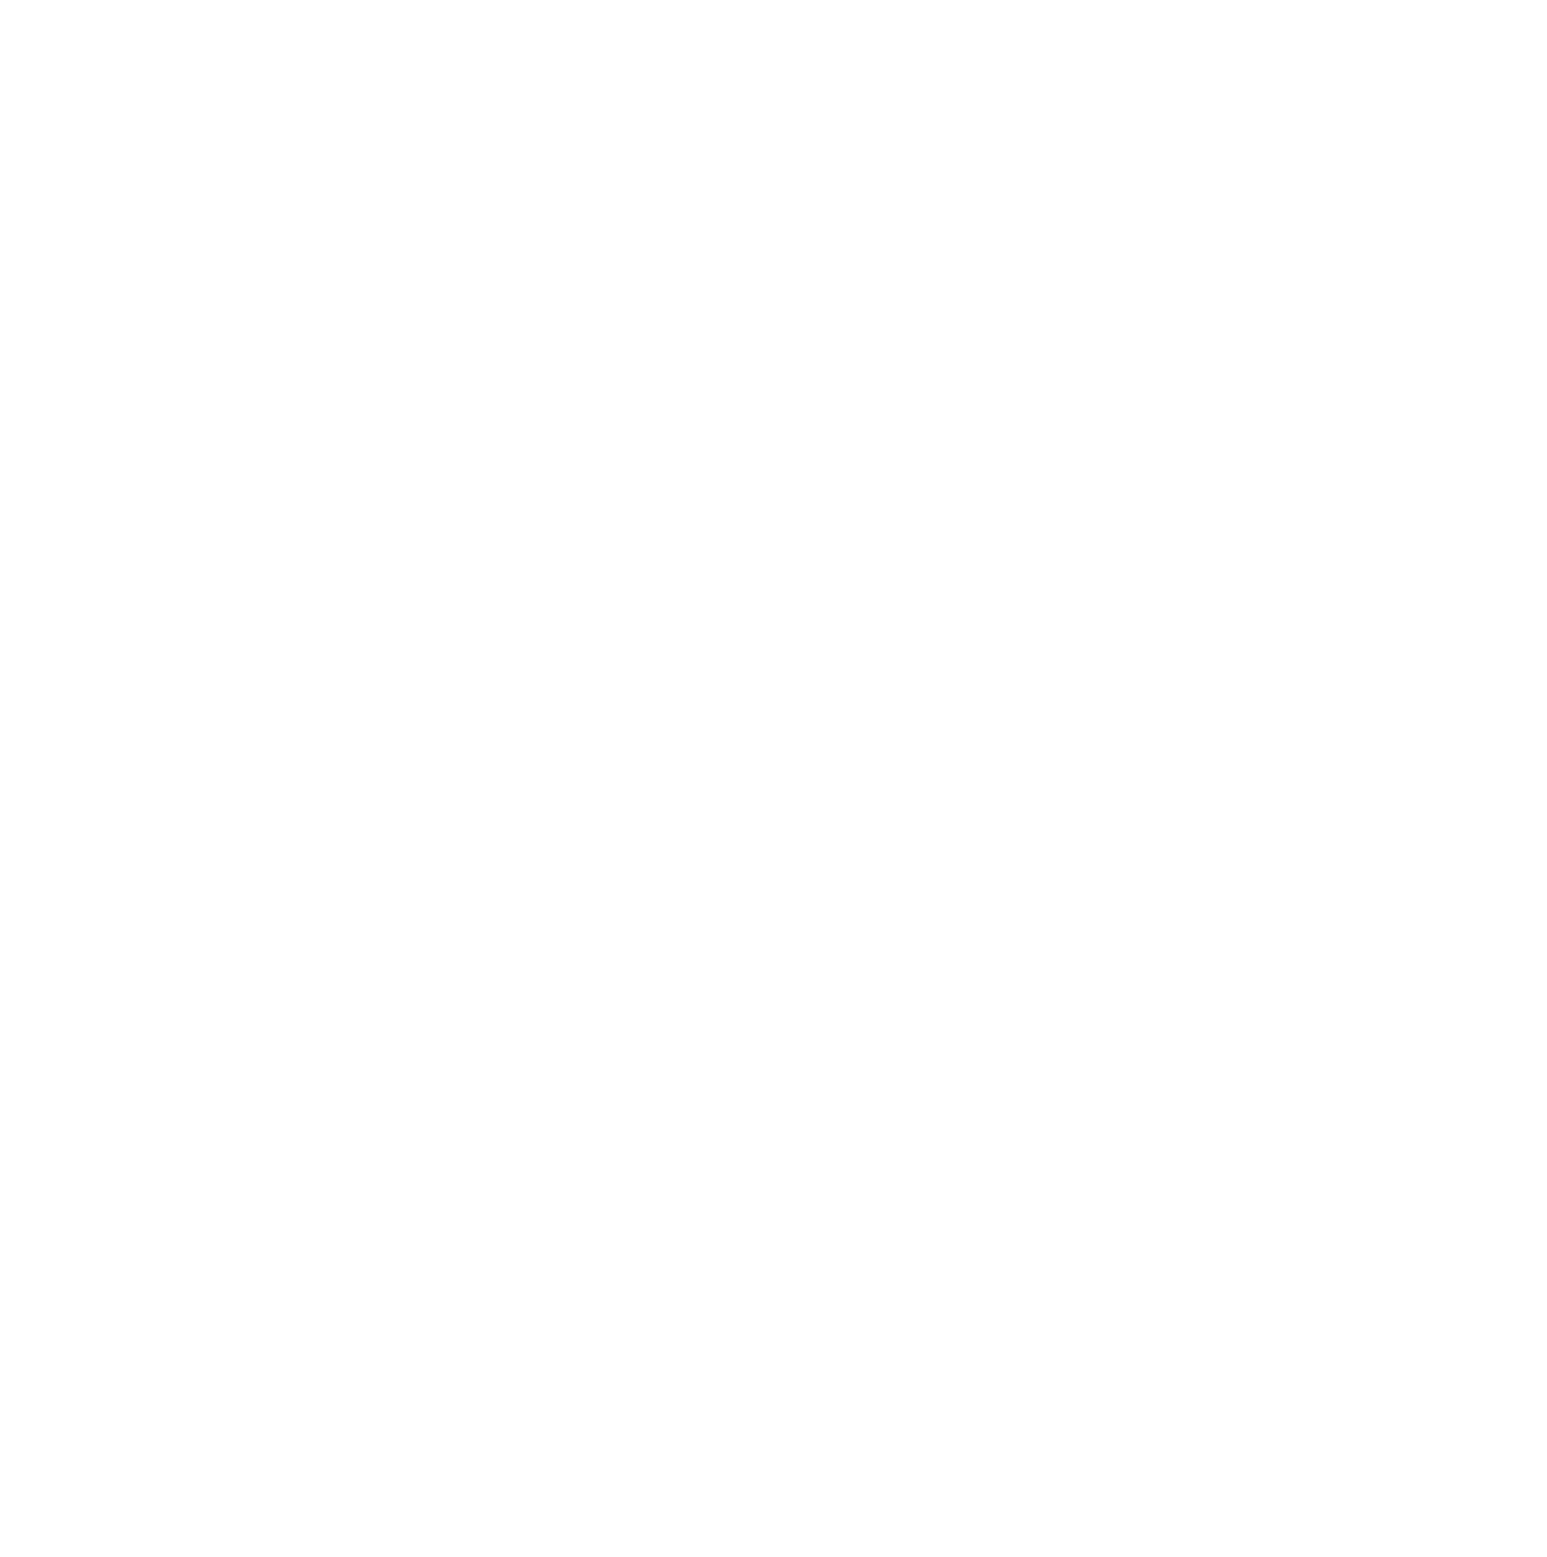 Archosaur Games logo large for dark backgrounds (transparent PNG)